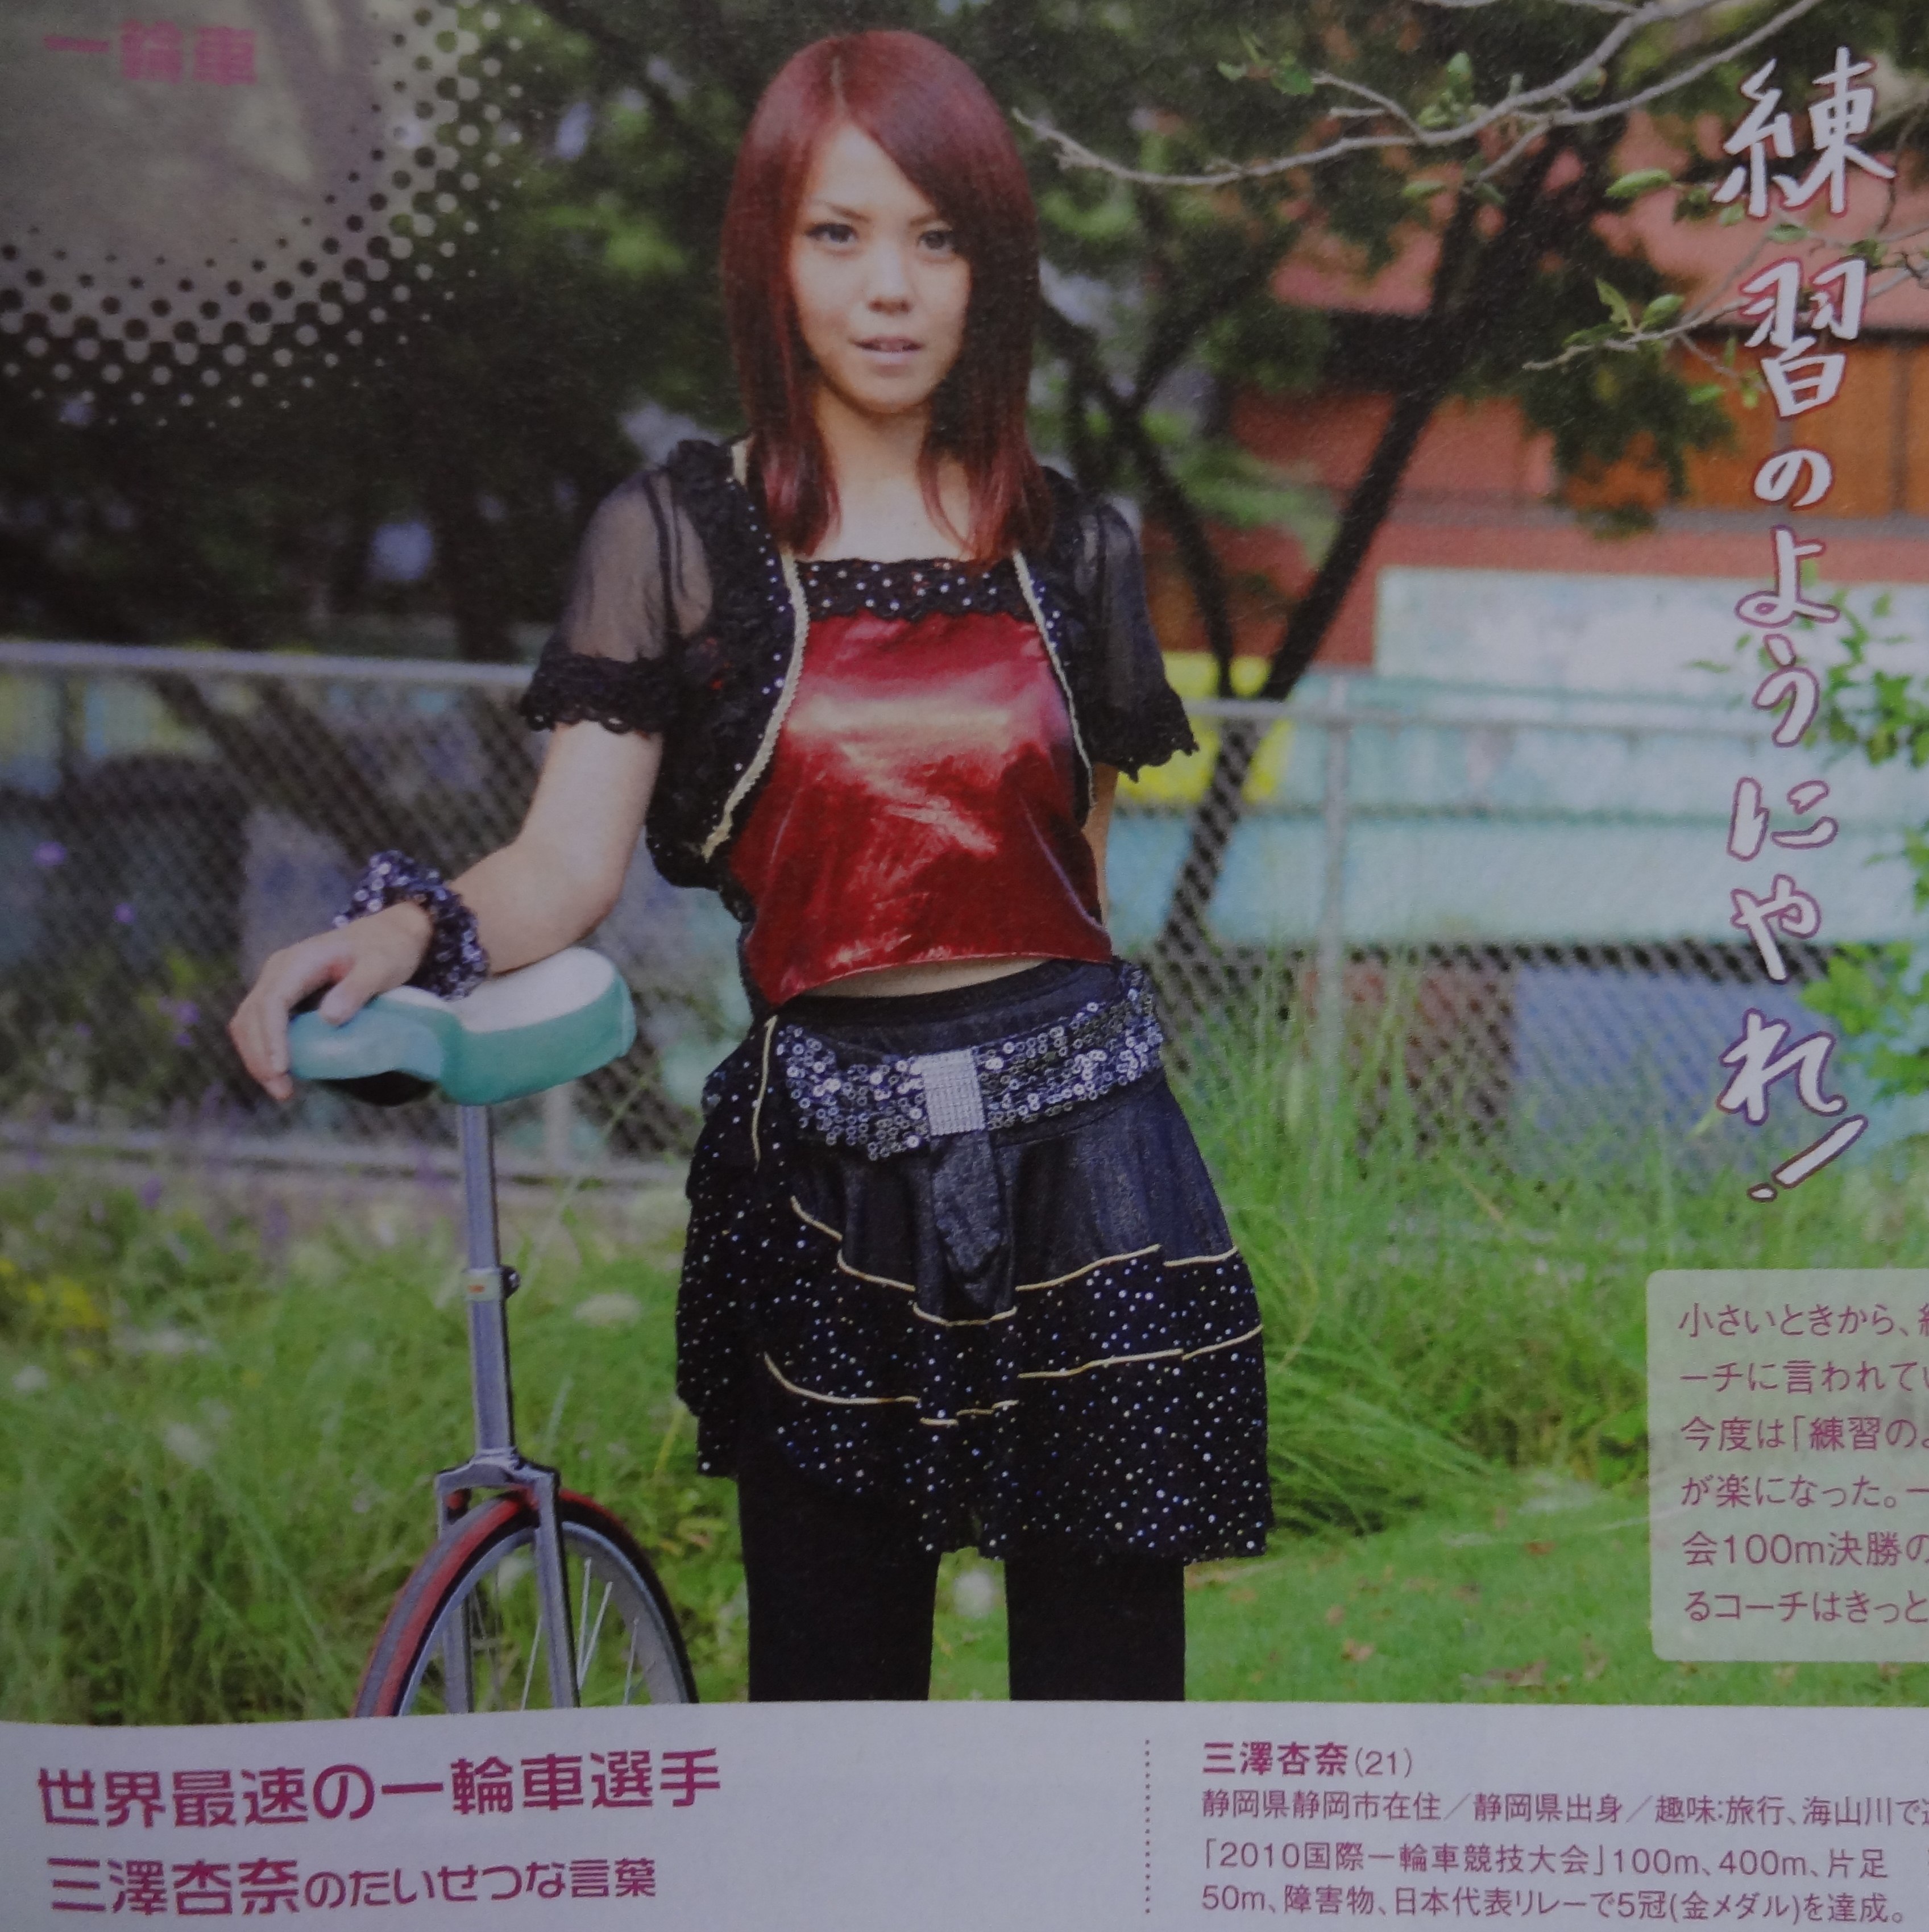 若者向けカルチャー雑誌-Tokyo graffiti#086●美女アスリートがイチバン素敵!★一輪車ガールズパフォーマーあんぴー